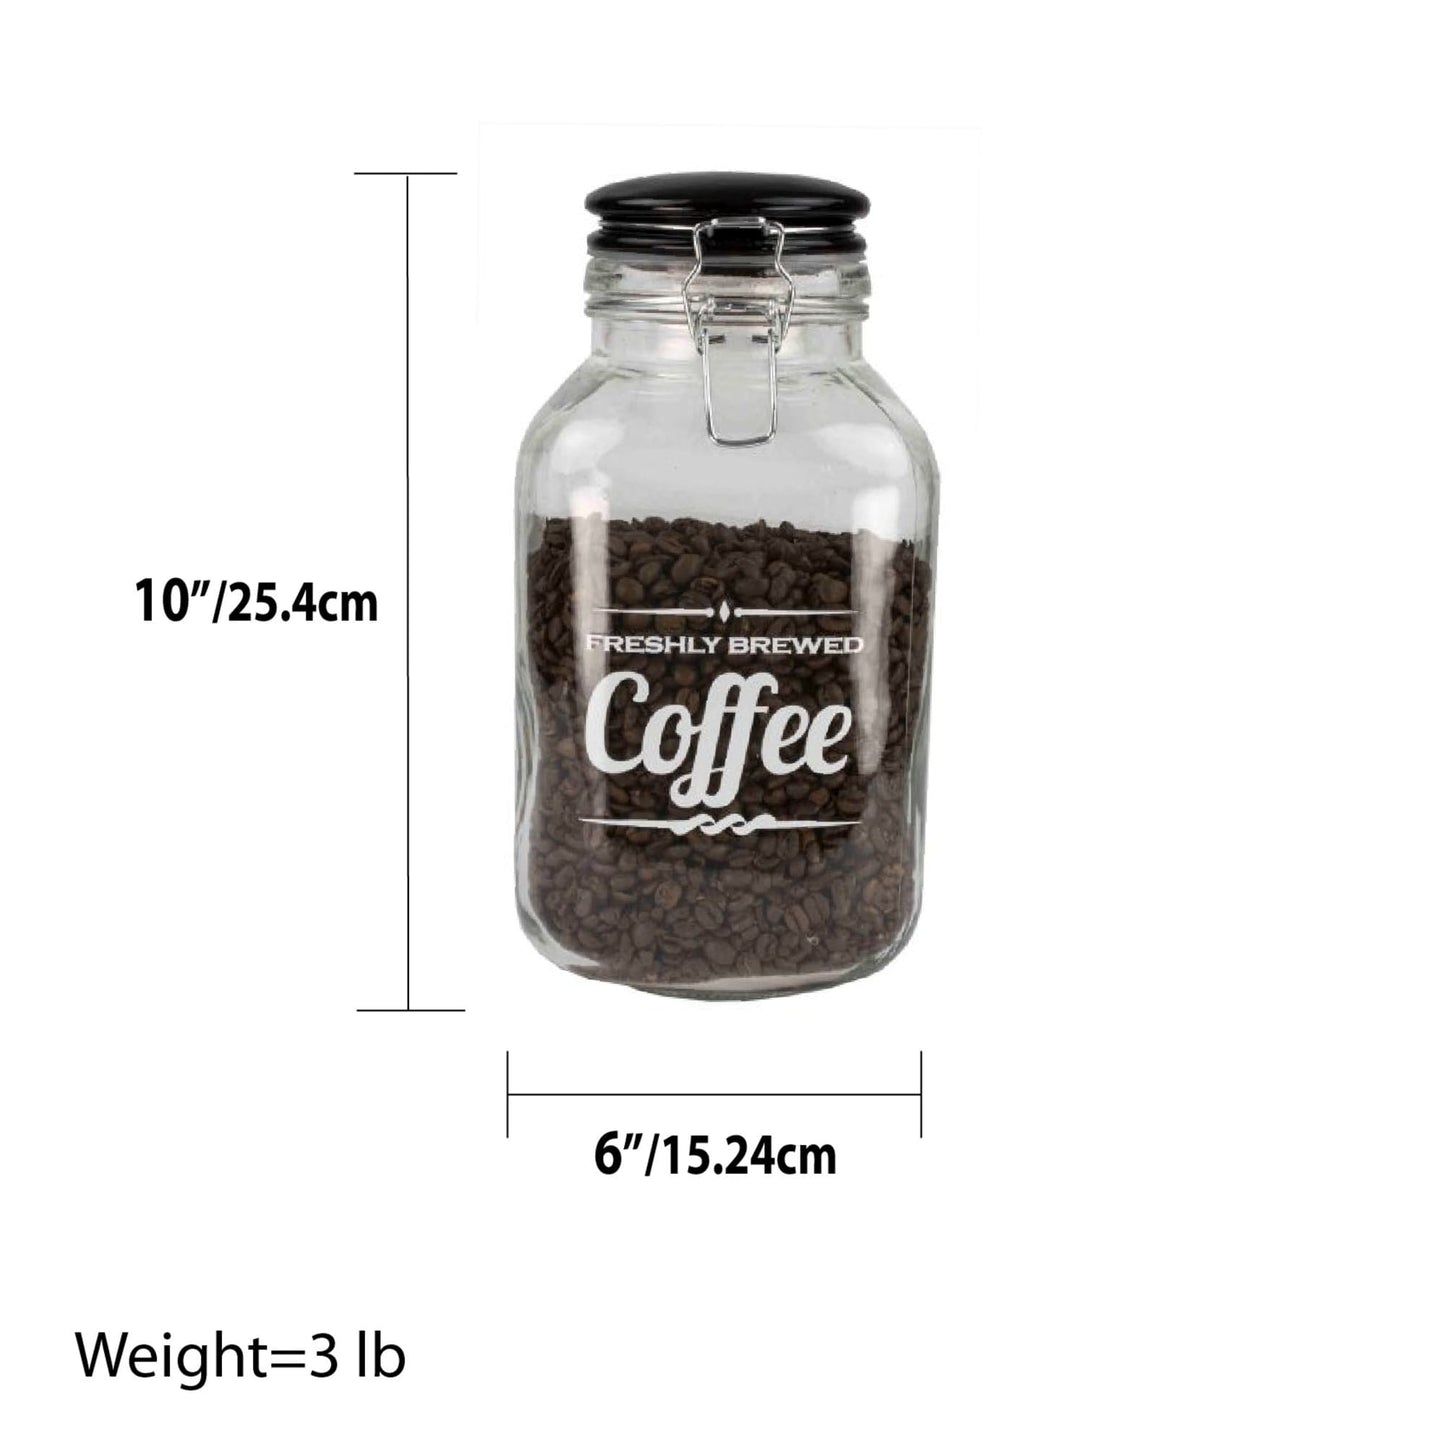 Freshly Brewed Coffee 102.4 oz. Glass Jar with Ceramic Flip Lid Top, Black